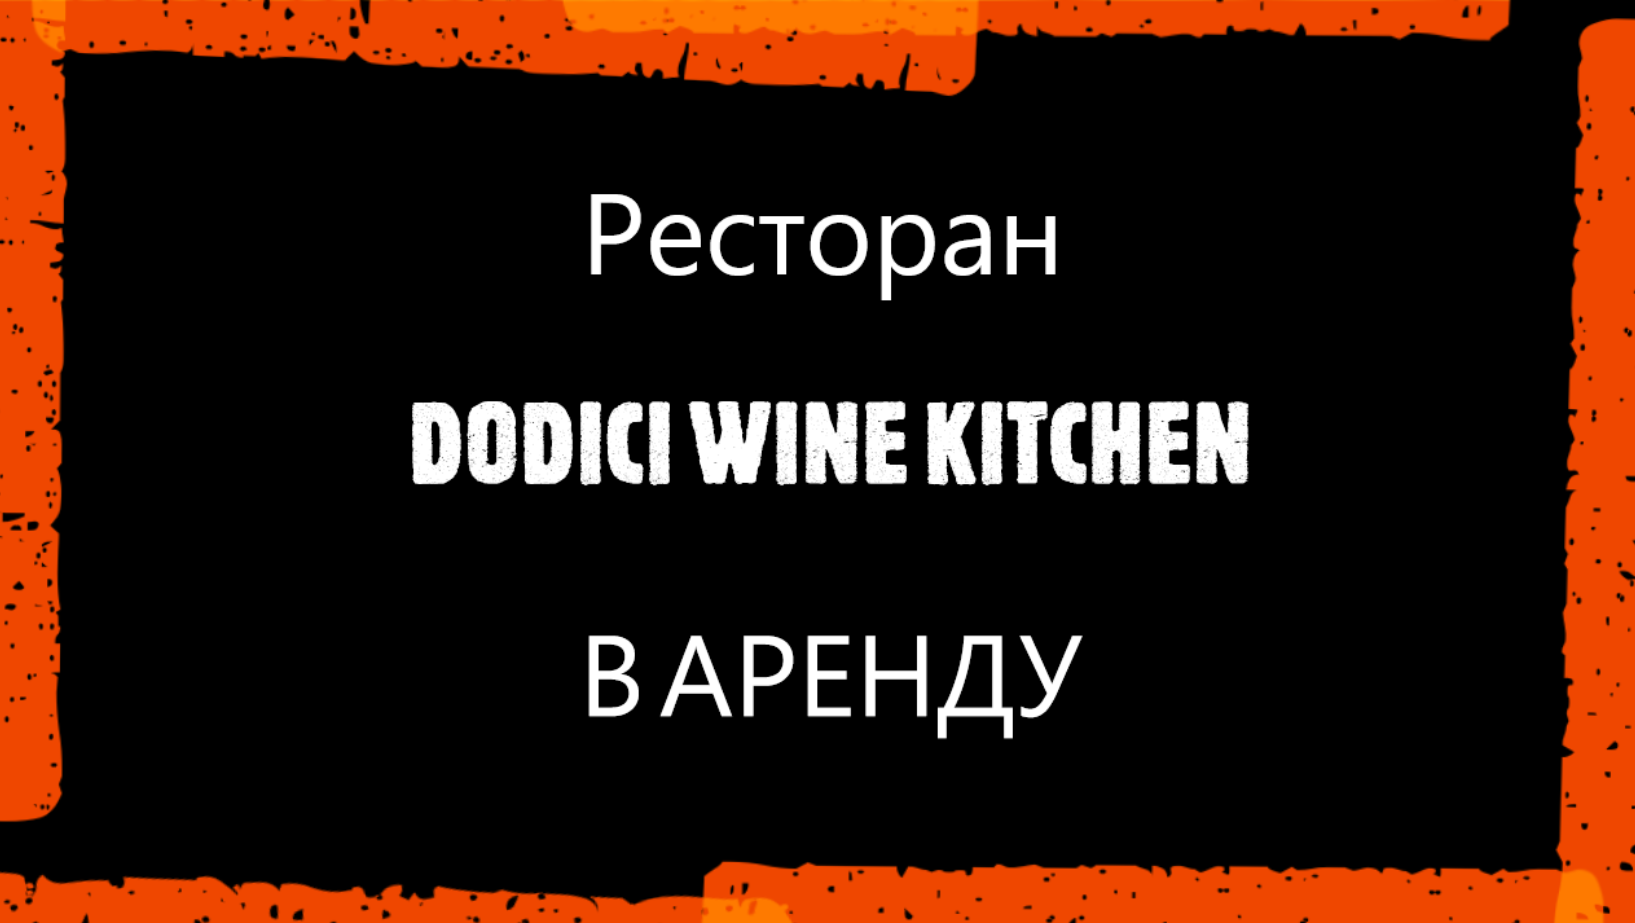 Ресторан "Dodicci  wine kitchen" в аренду Золотая миля м. Кропоткинская